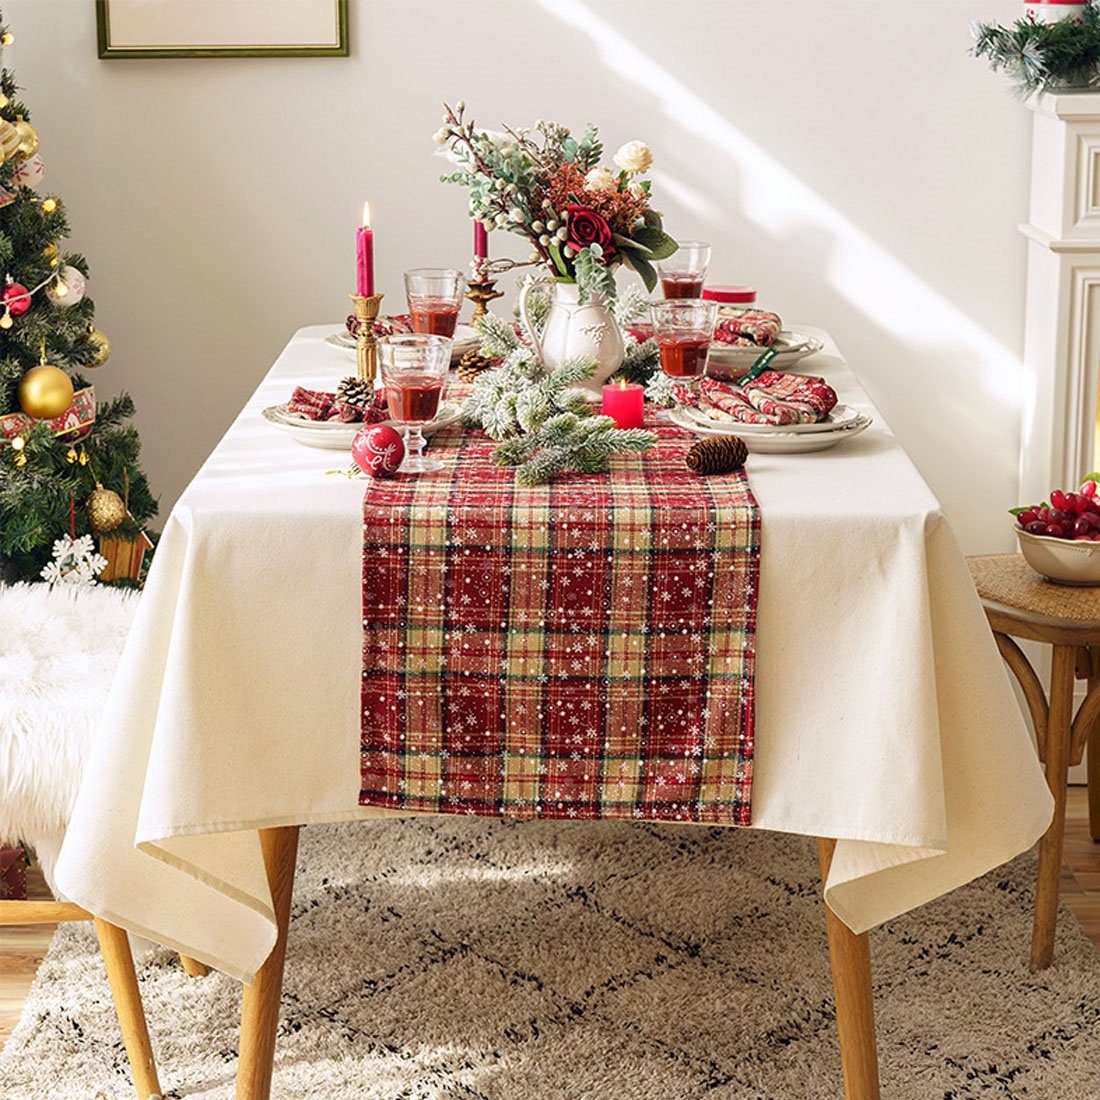 Tischläufer Tischläufer, DÖRÖY festliche 40*200cm bedruckter Tischfahnen Weihnachtsdekoration